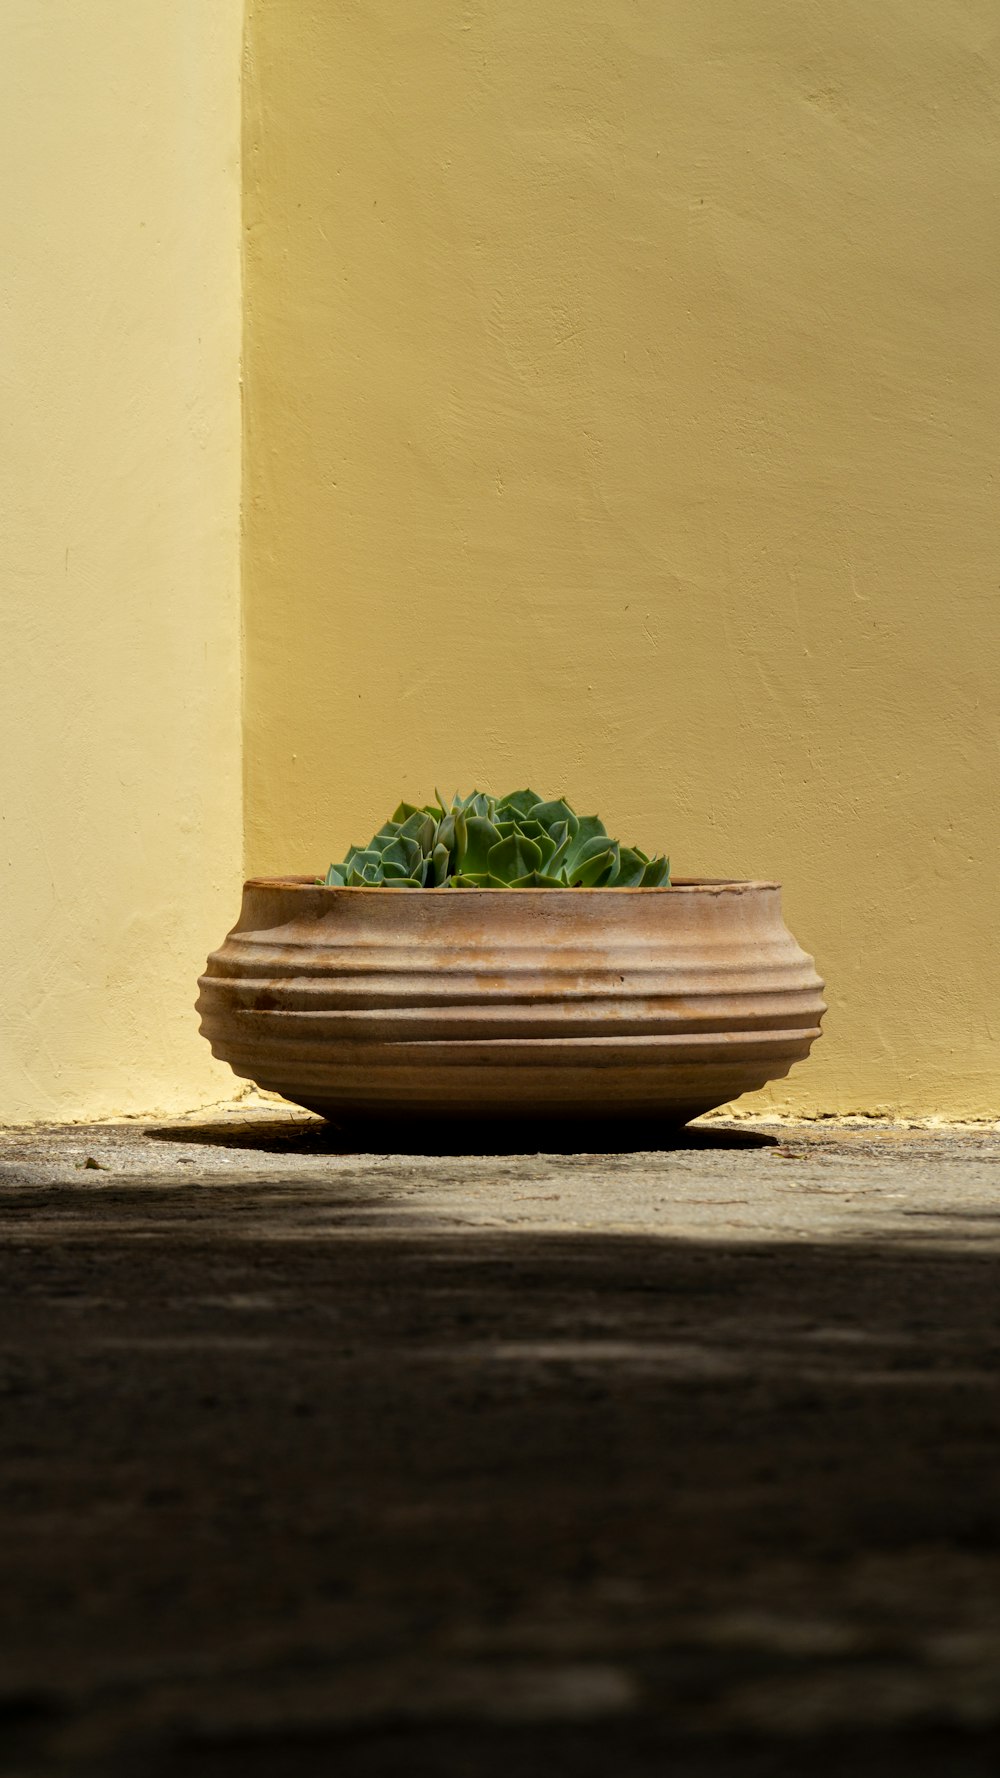 pianta a foglia verde in vaso marrone accanto al muro